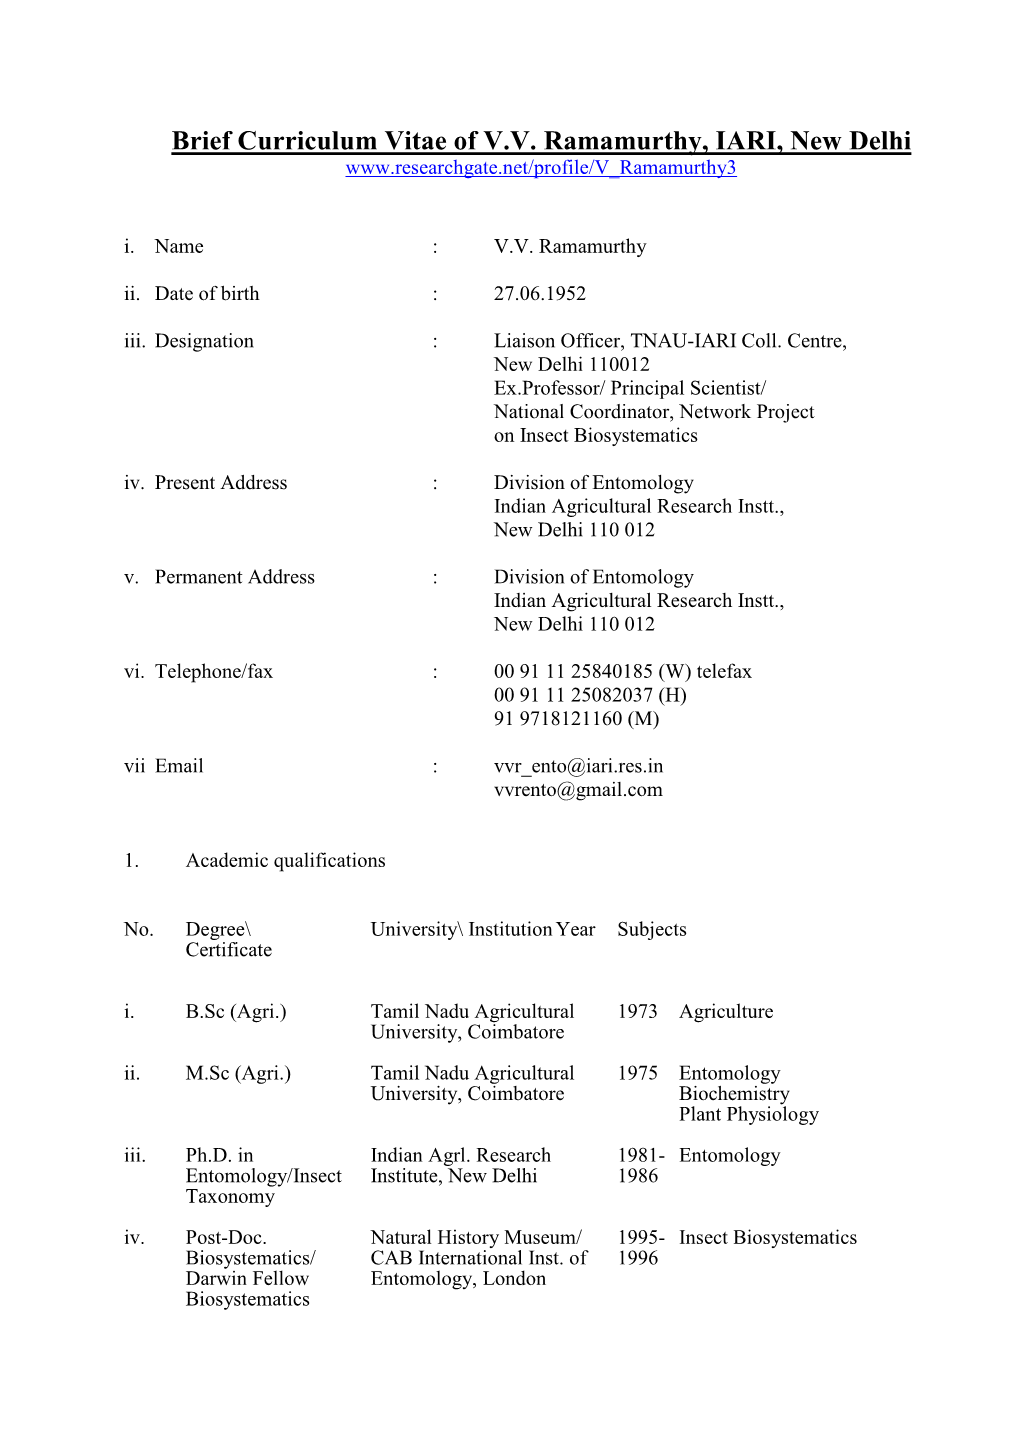 Brief Curriculum Vitae of VV Ramamurthy, IARI, New Delhi